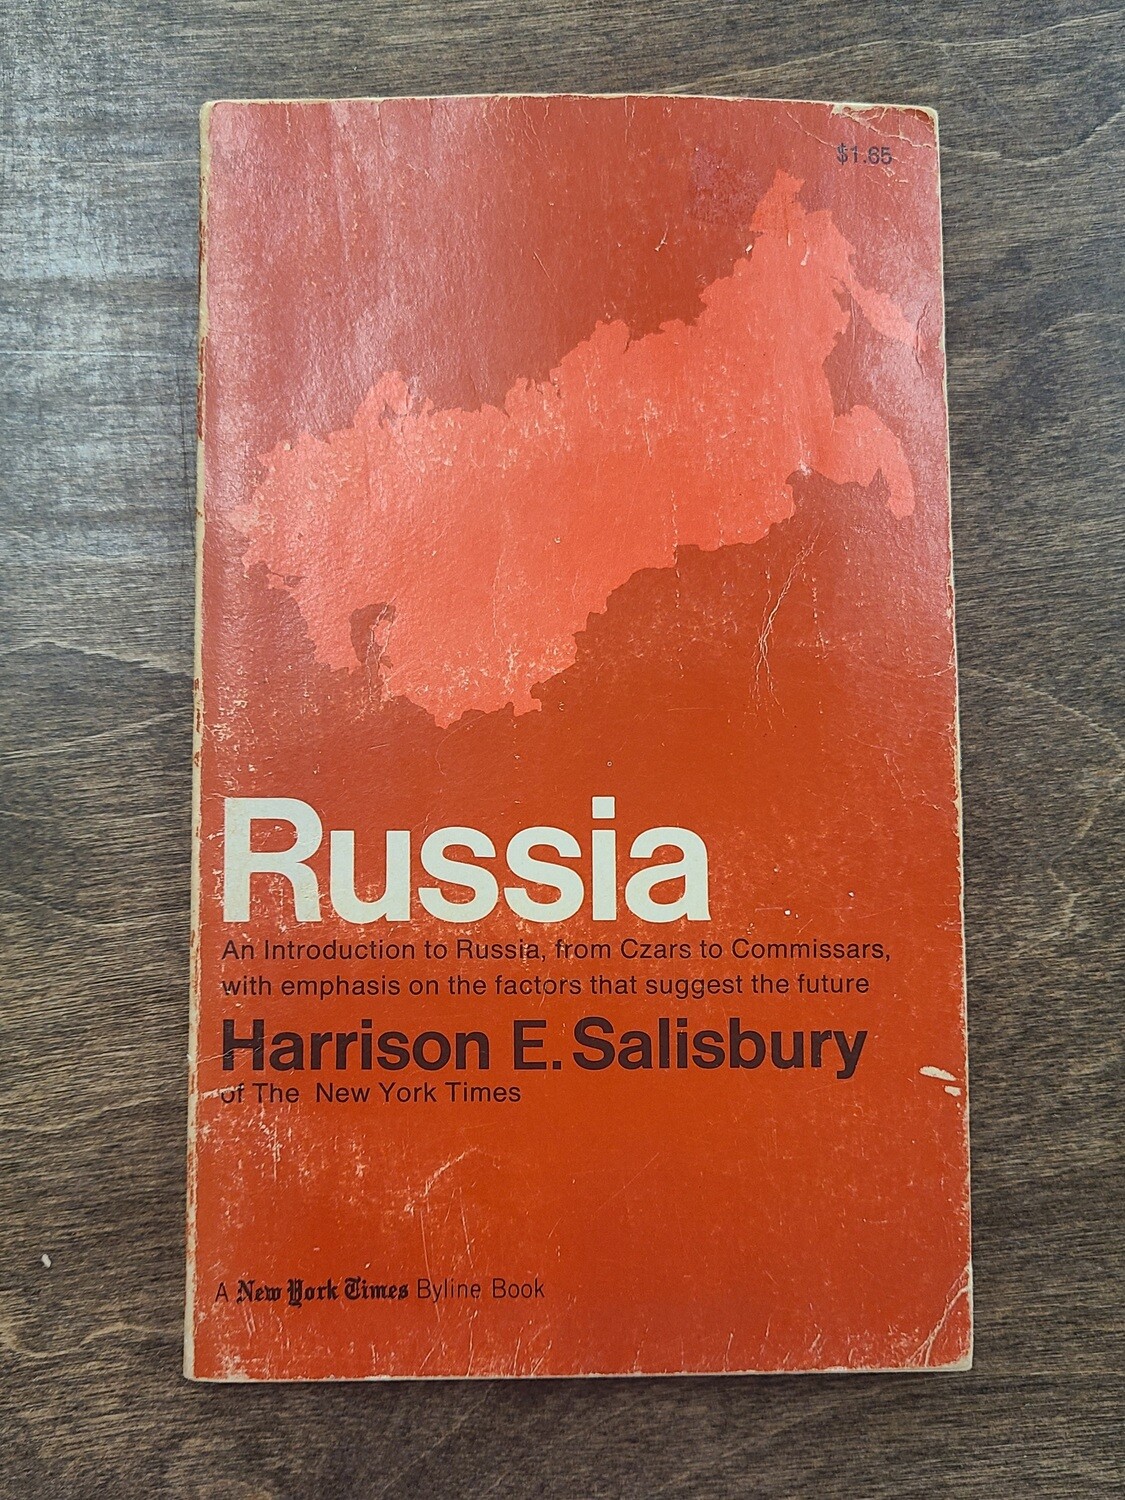 Russia by Harrison E. Salisbury